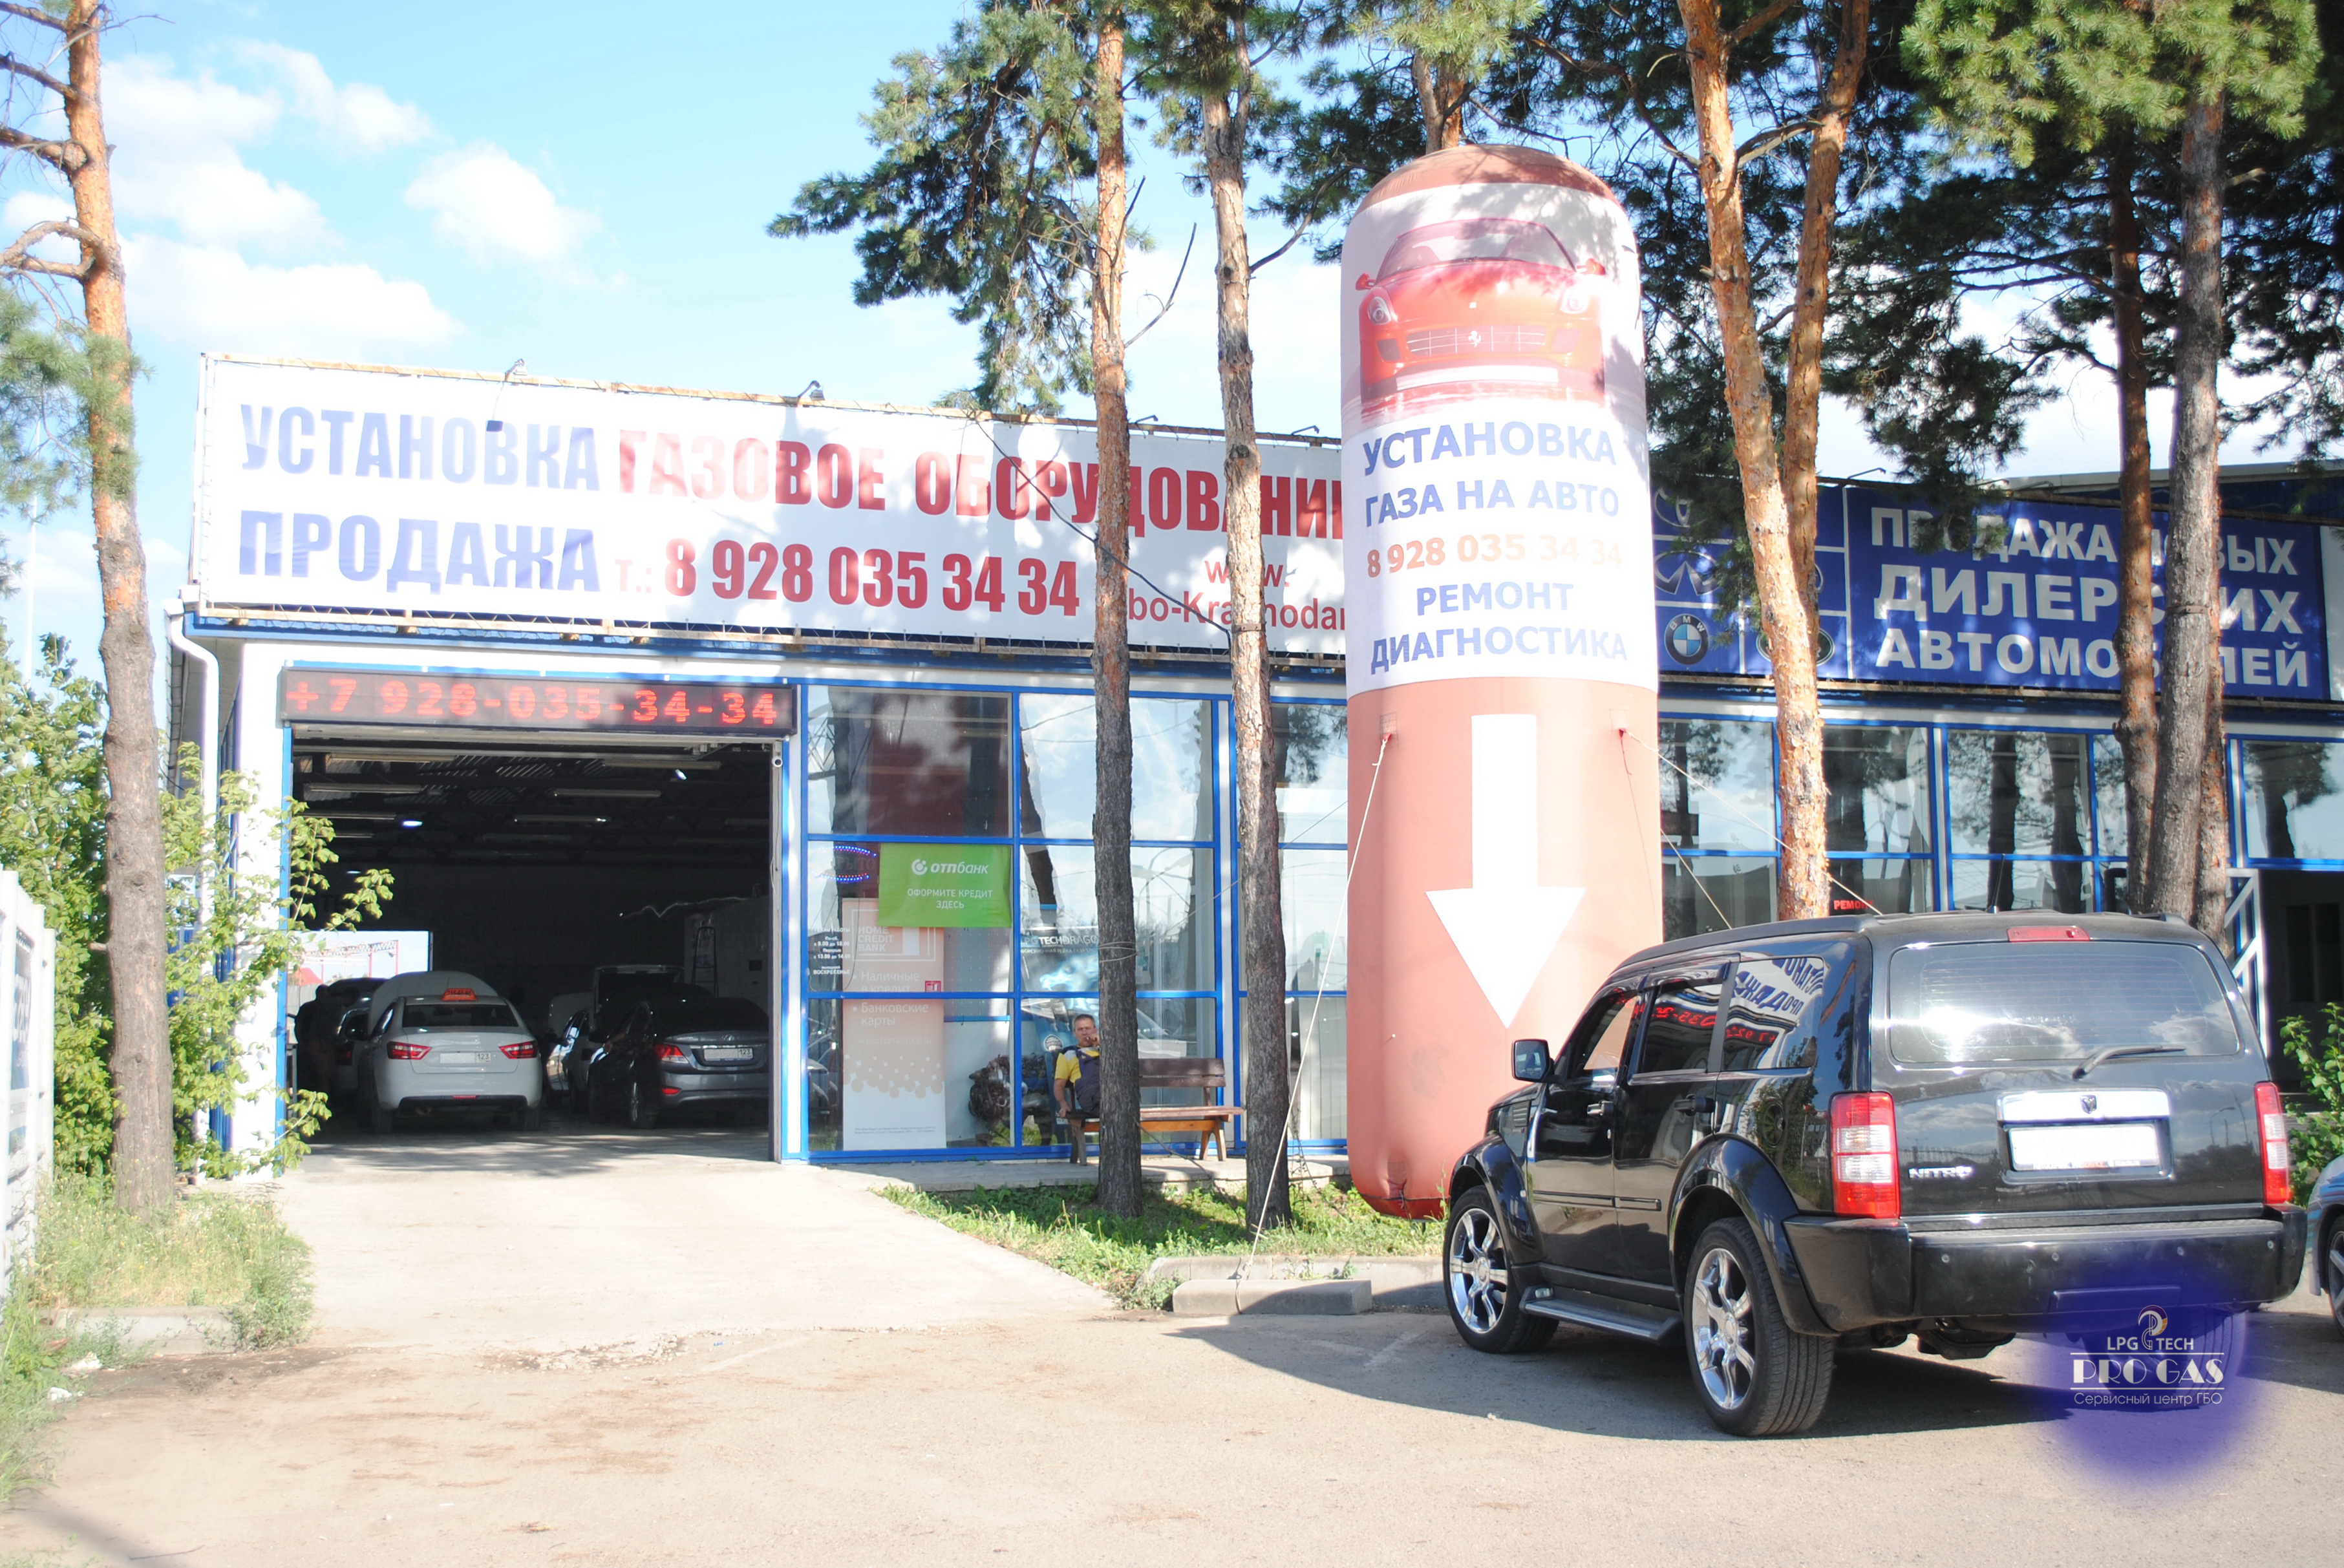 Установка Газового Оборудования ГБО на Авто в Краснодаре и Краснодарском крае